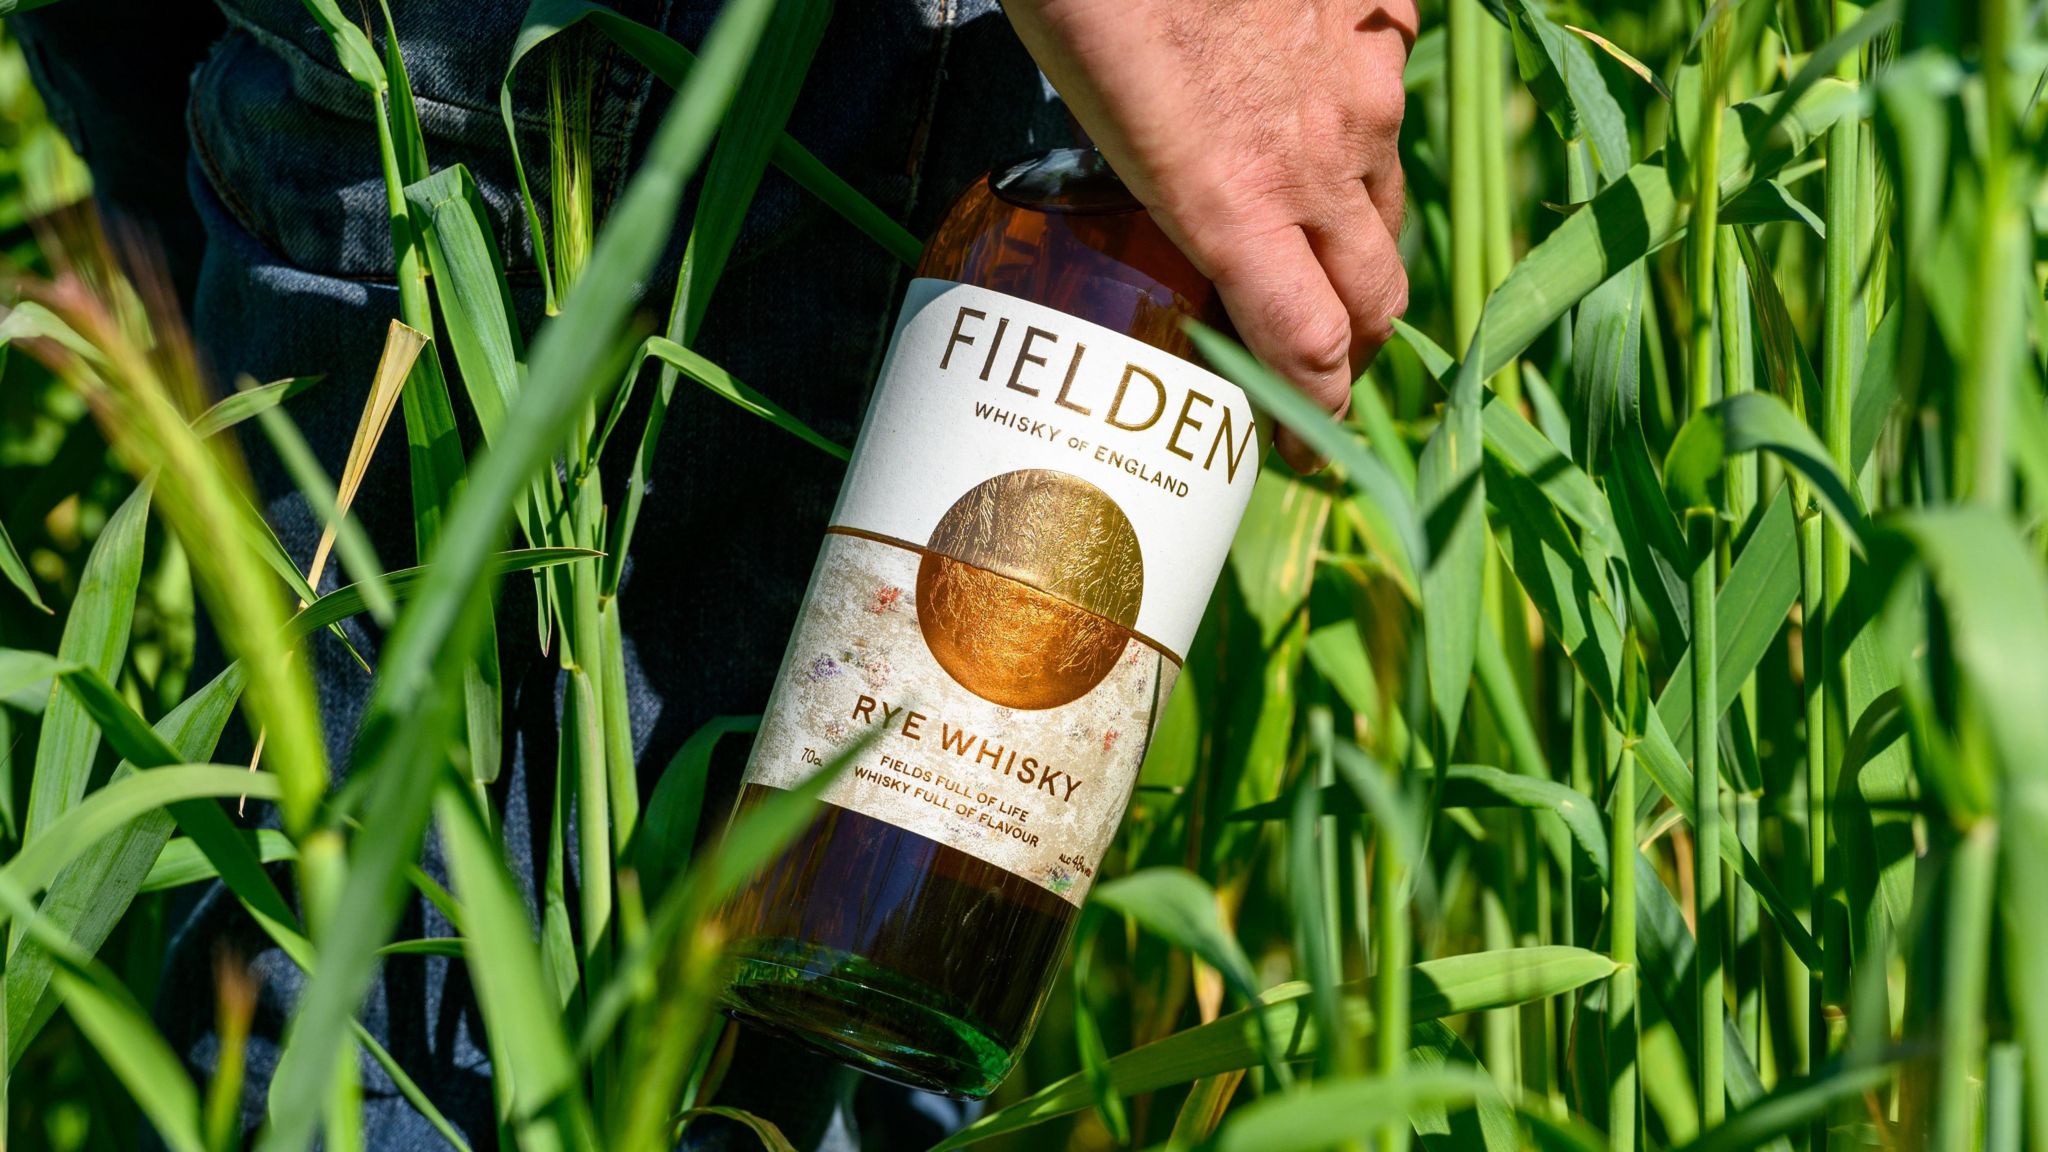 A hand holding a Fielden bottle in a field of wheat